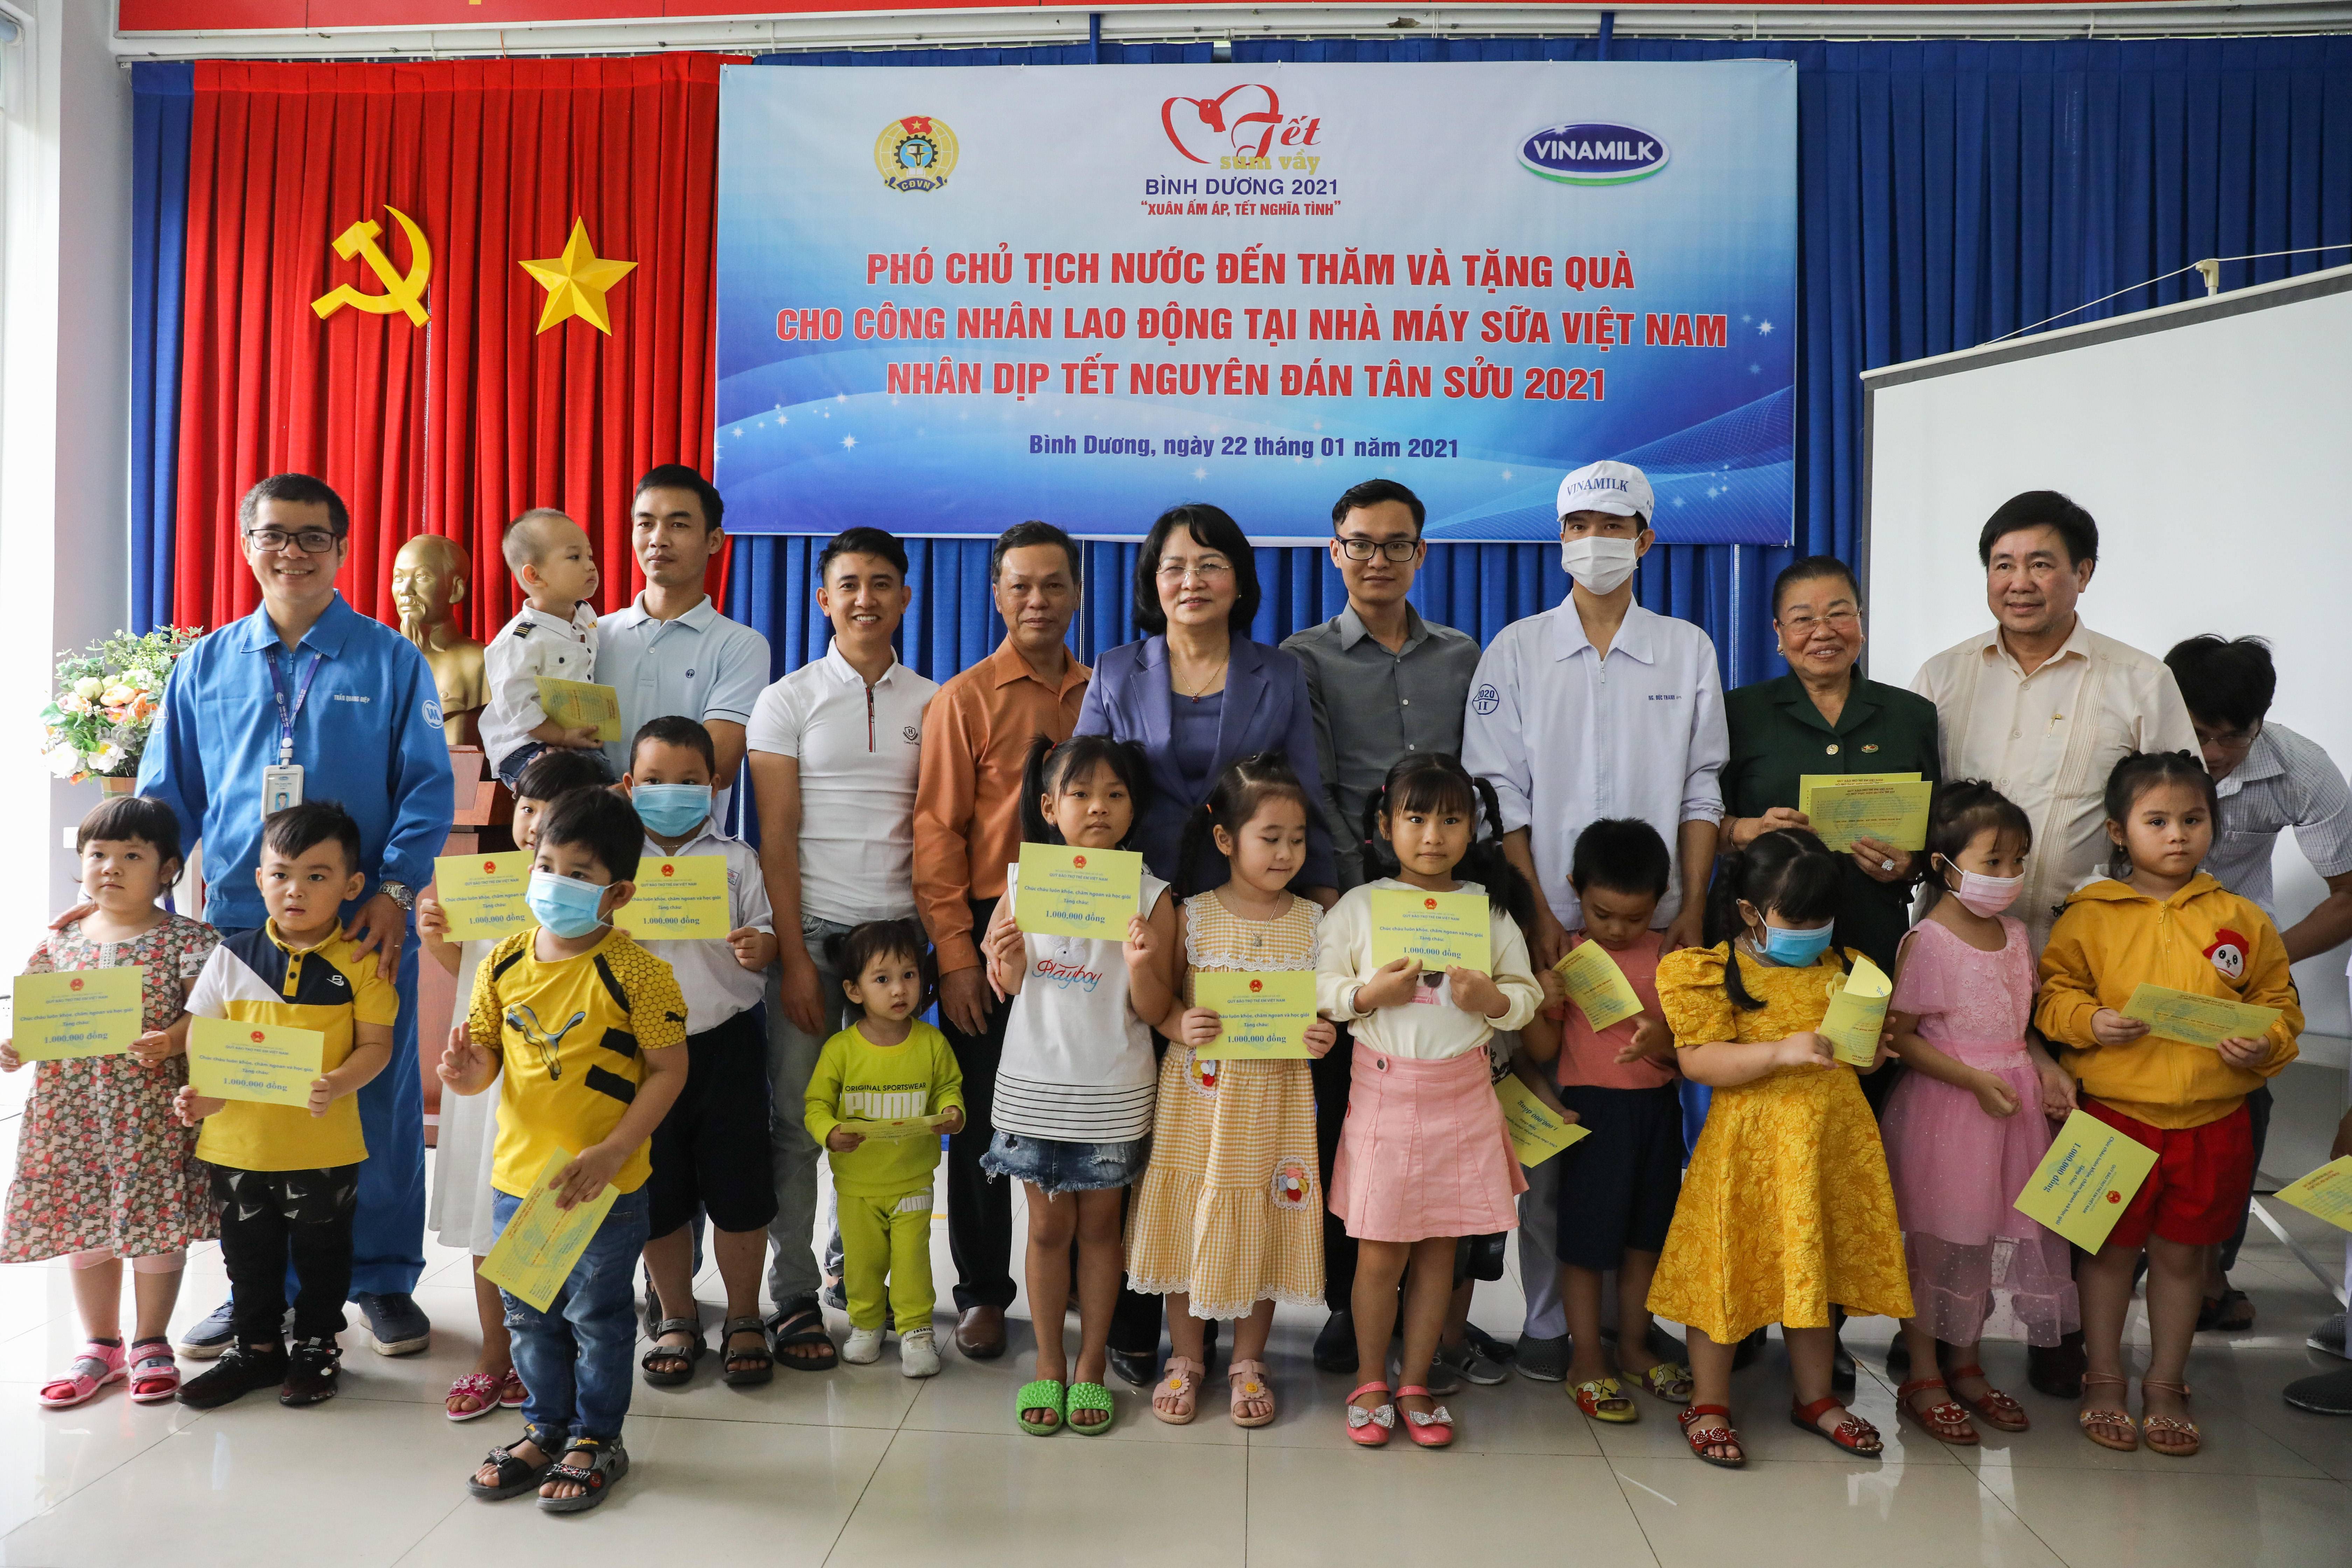 Phó Chủ tịch nước Đặng Thị Ngọc Thịnh trao quà Tết cho người lao động và con em của nhân viên nhà máy sữa Vinamilk tại Bình Dương